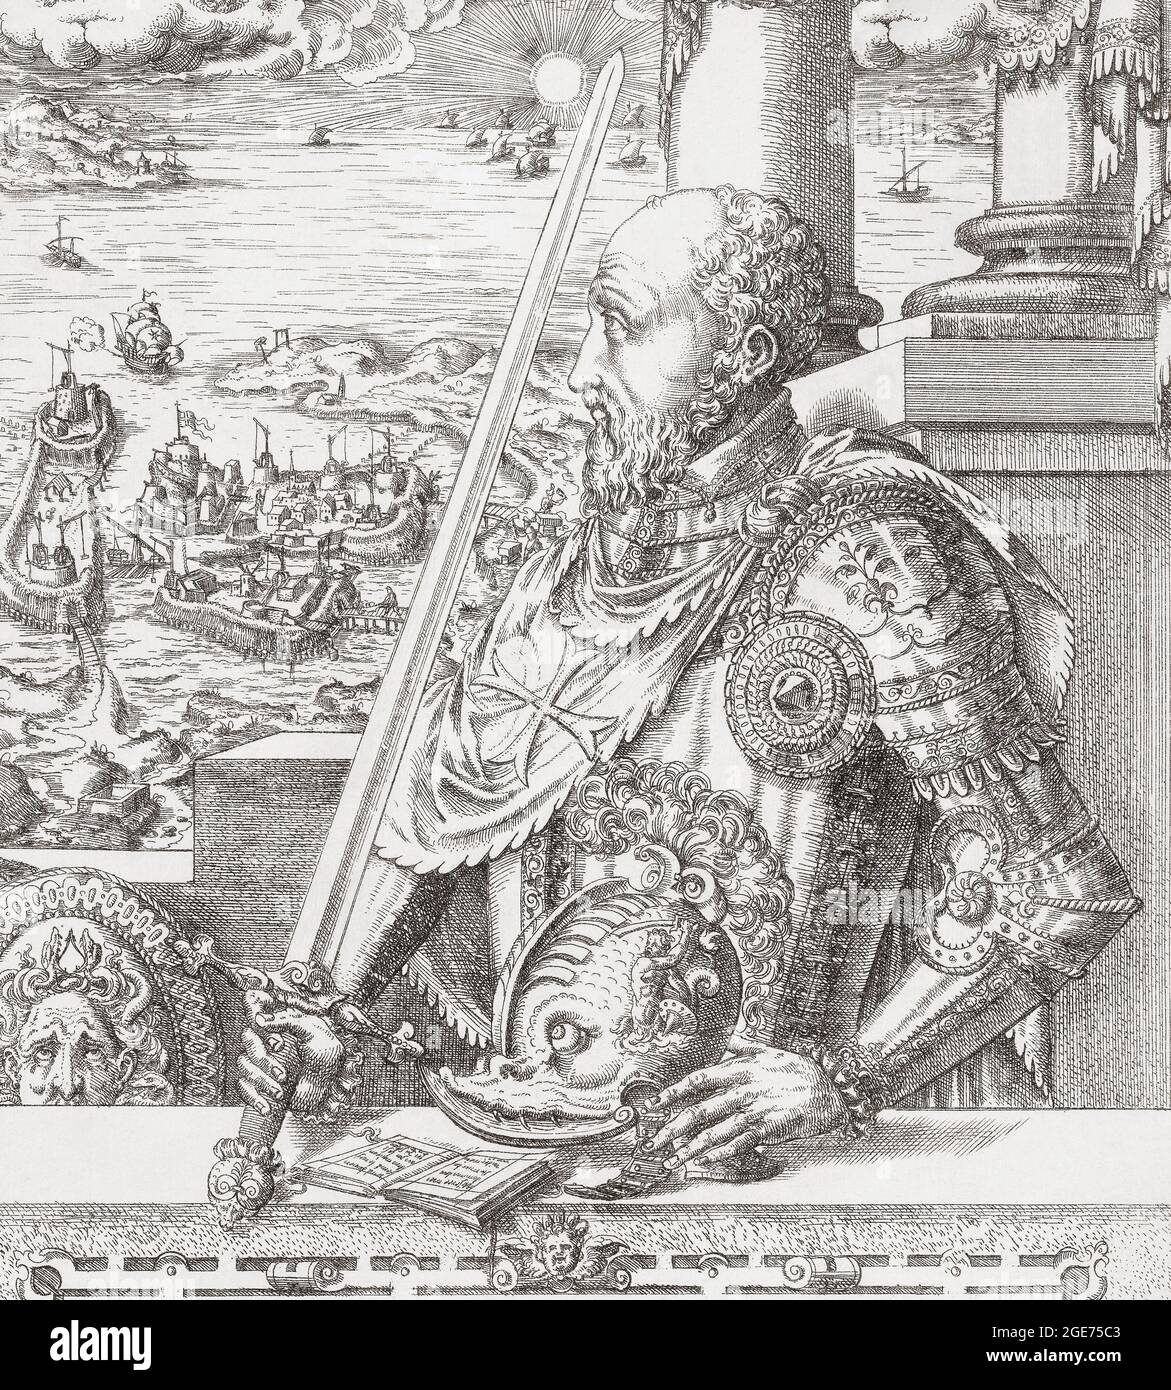 Jean Parisot de la Valette, c. 1494 - 1568. Ritter des Ordens St. John. Großmeister des Malteserordens. Er organisierte die Verteidigung Maltas während der Großen Belagerungsherrschaft durch die Türken im Jahr 1565. Nach einer Arbeit von Mathis Zundt aus dem 16. Jahrhundert. Stockfoto